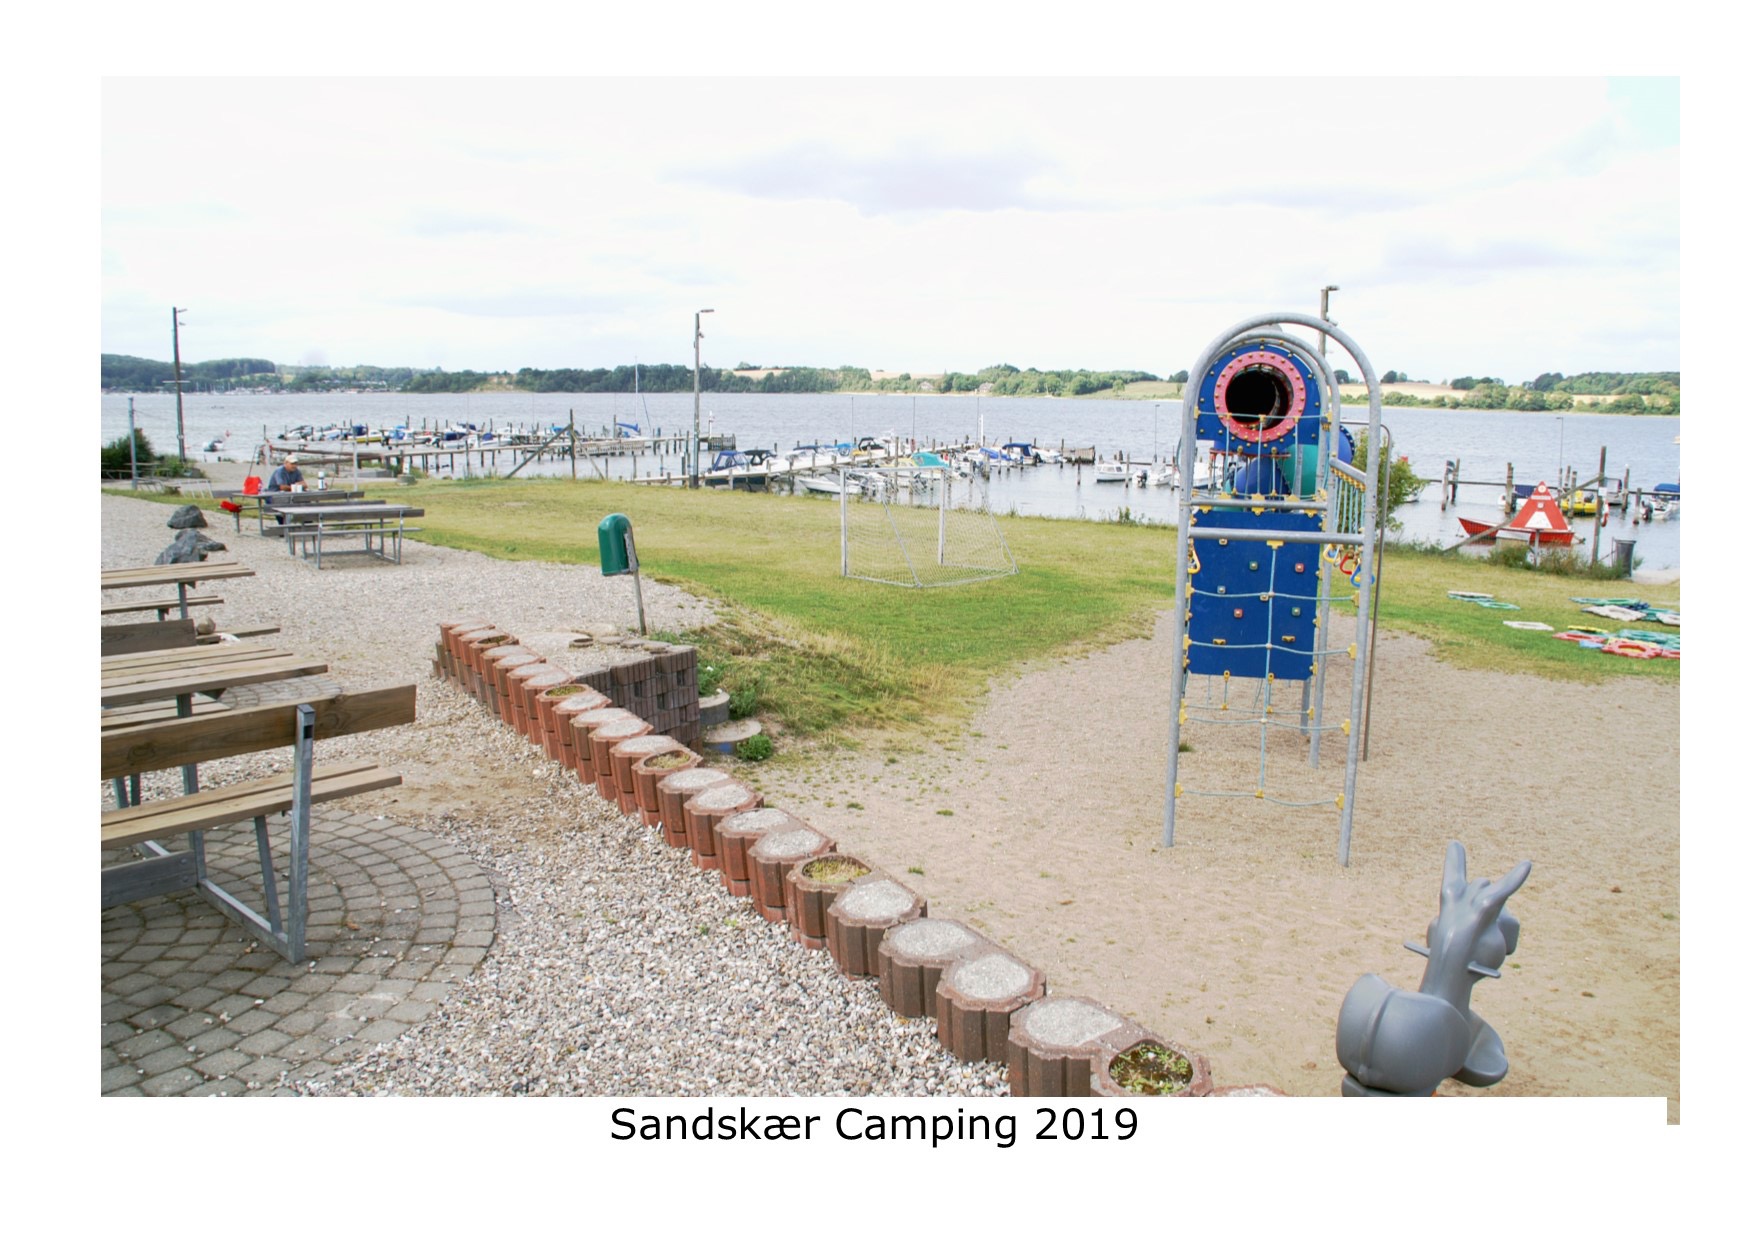 Sandskær camping 2019 